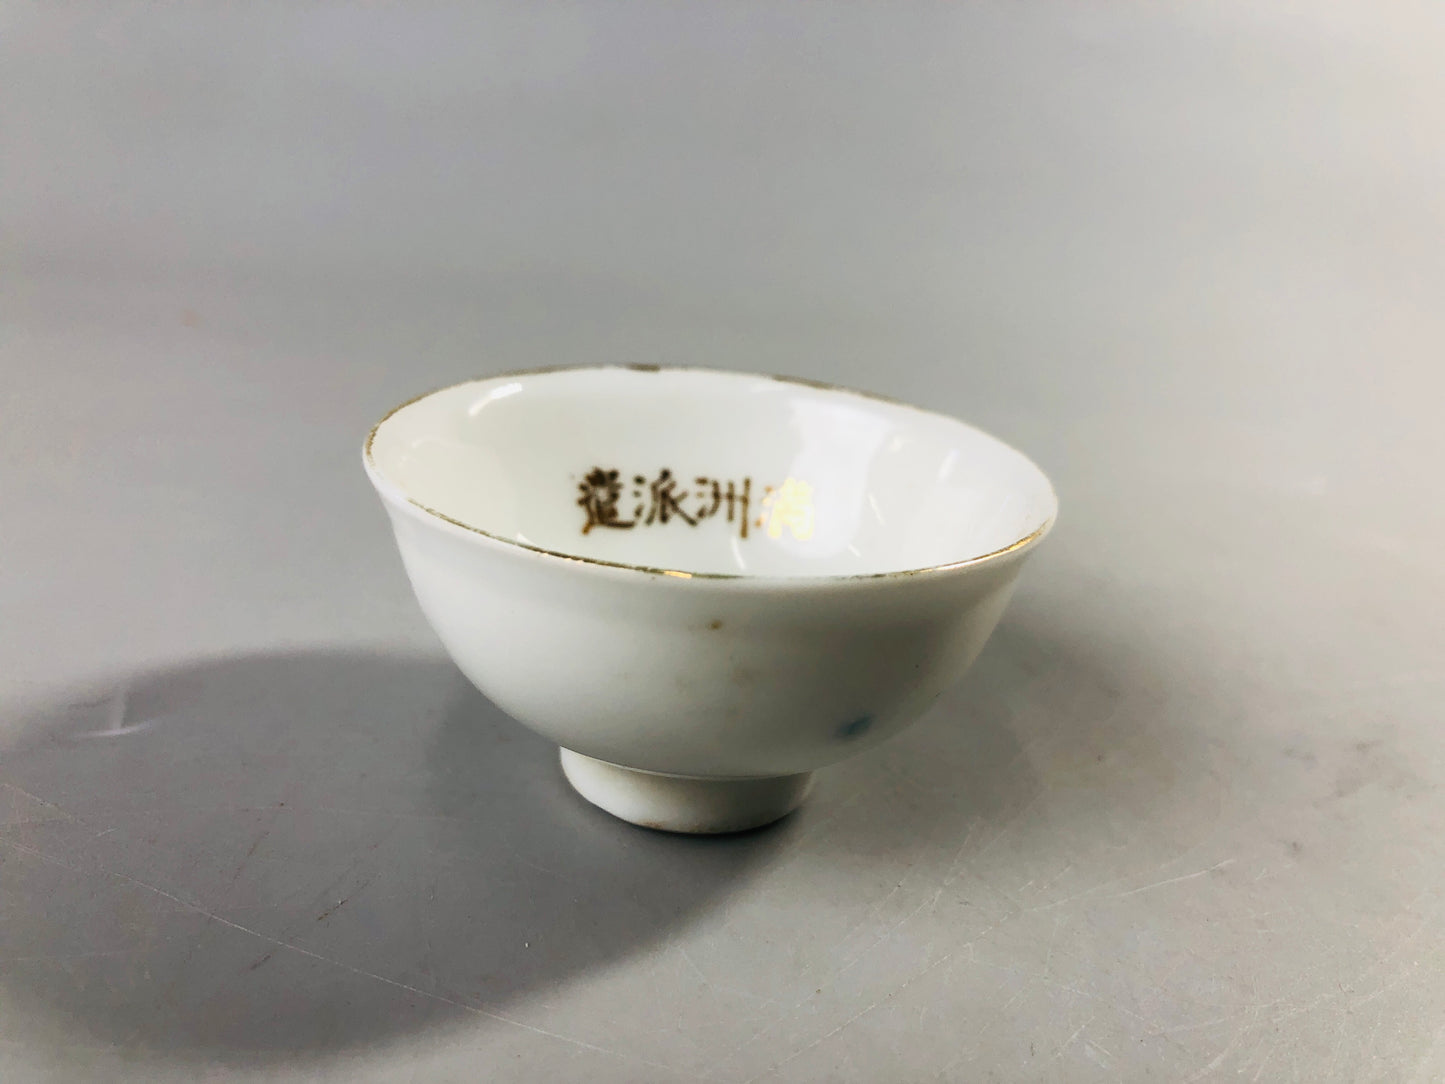 Y7092 Imperial Japan Army Sake cup set of 5 Manchuria Japan WW2 vintage cup